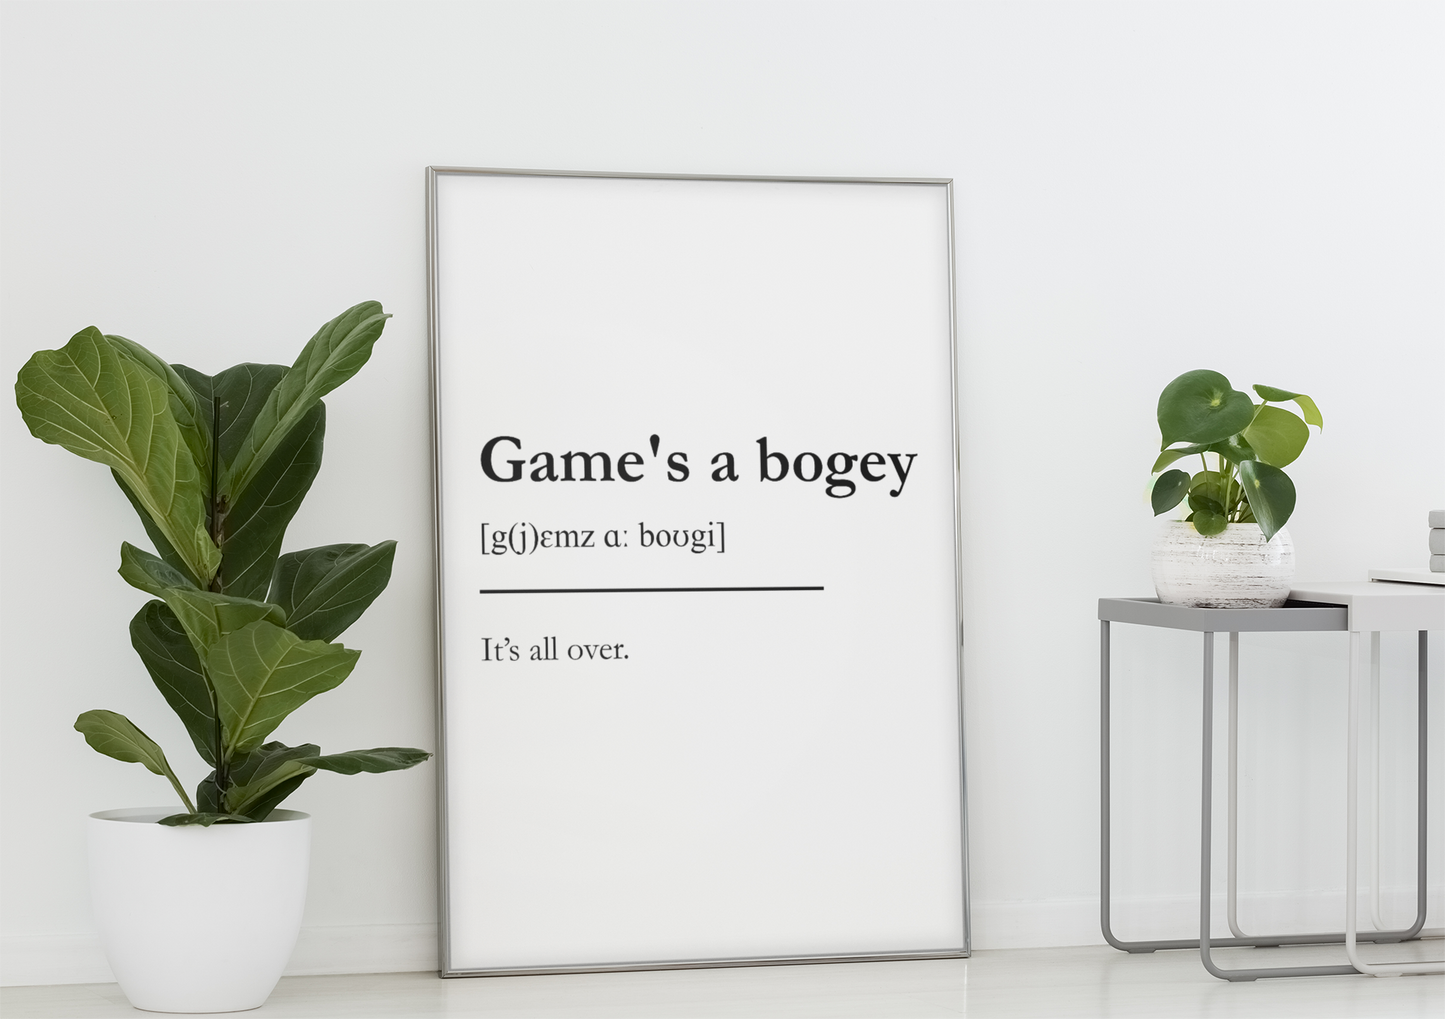 "Game's a bogey" - Scottish Slang